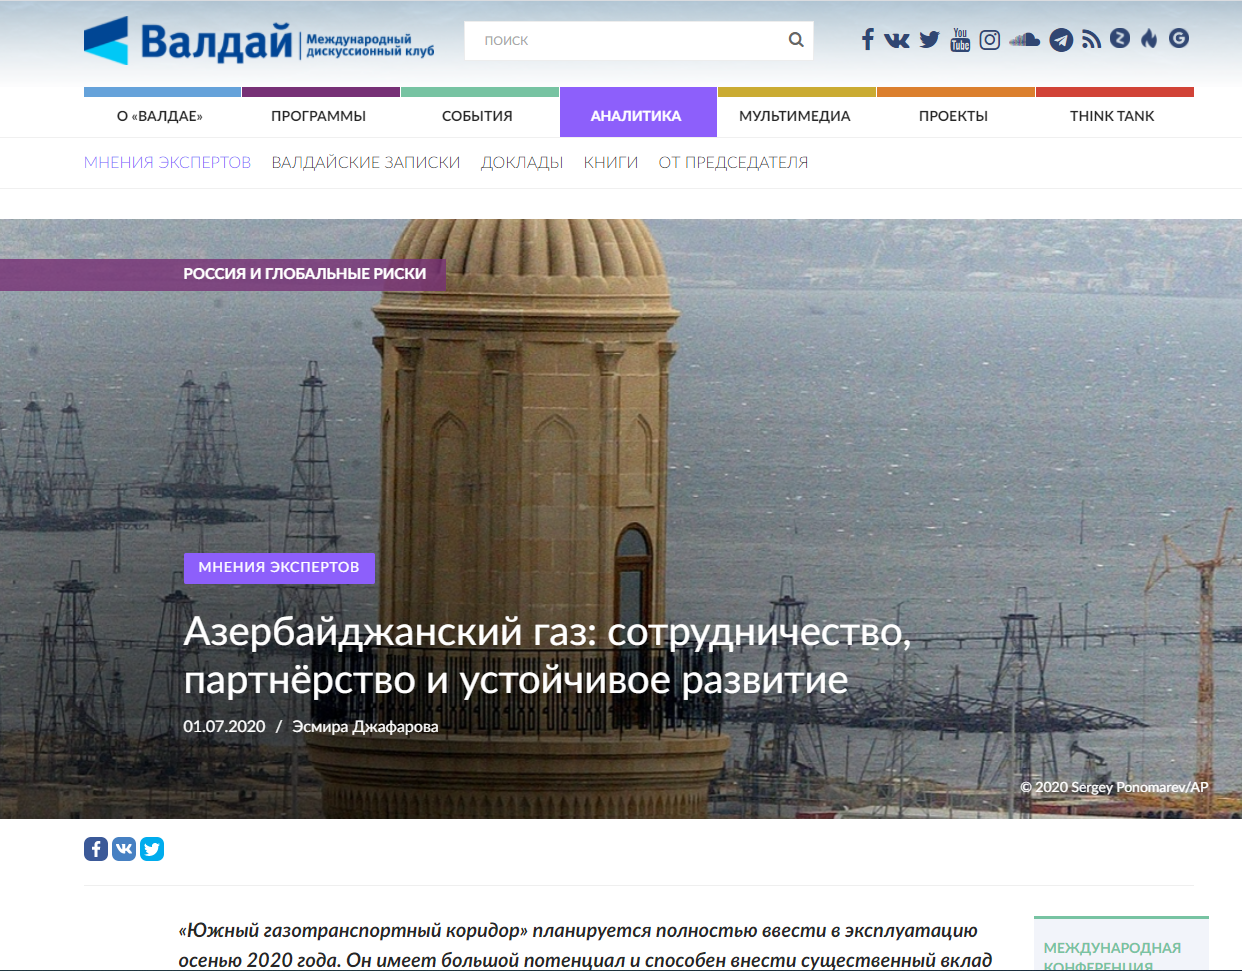 Азербайджанский газ: сотрудничество, партнёрство и устойчивое развитие